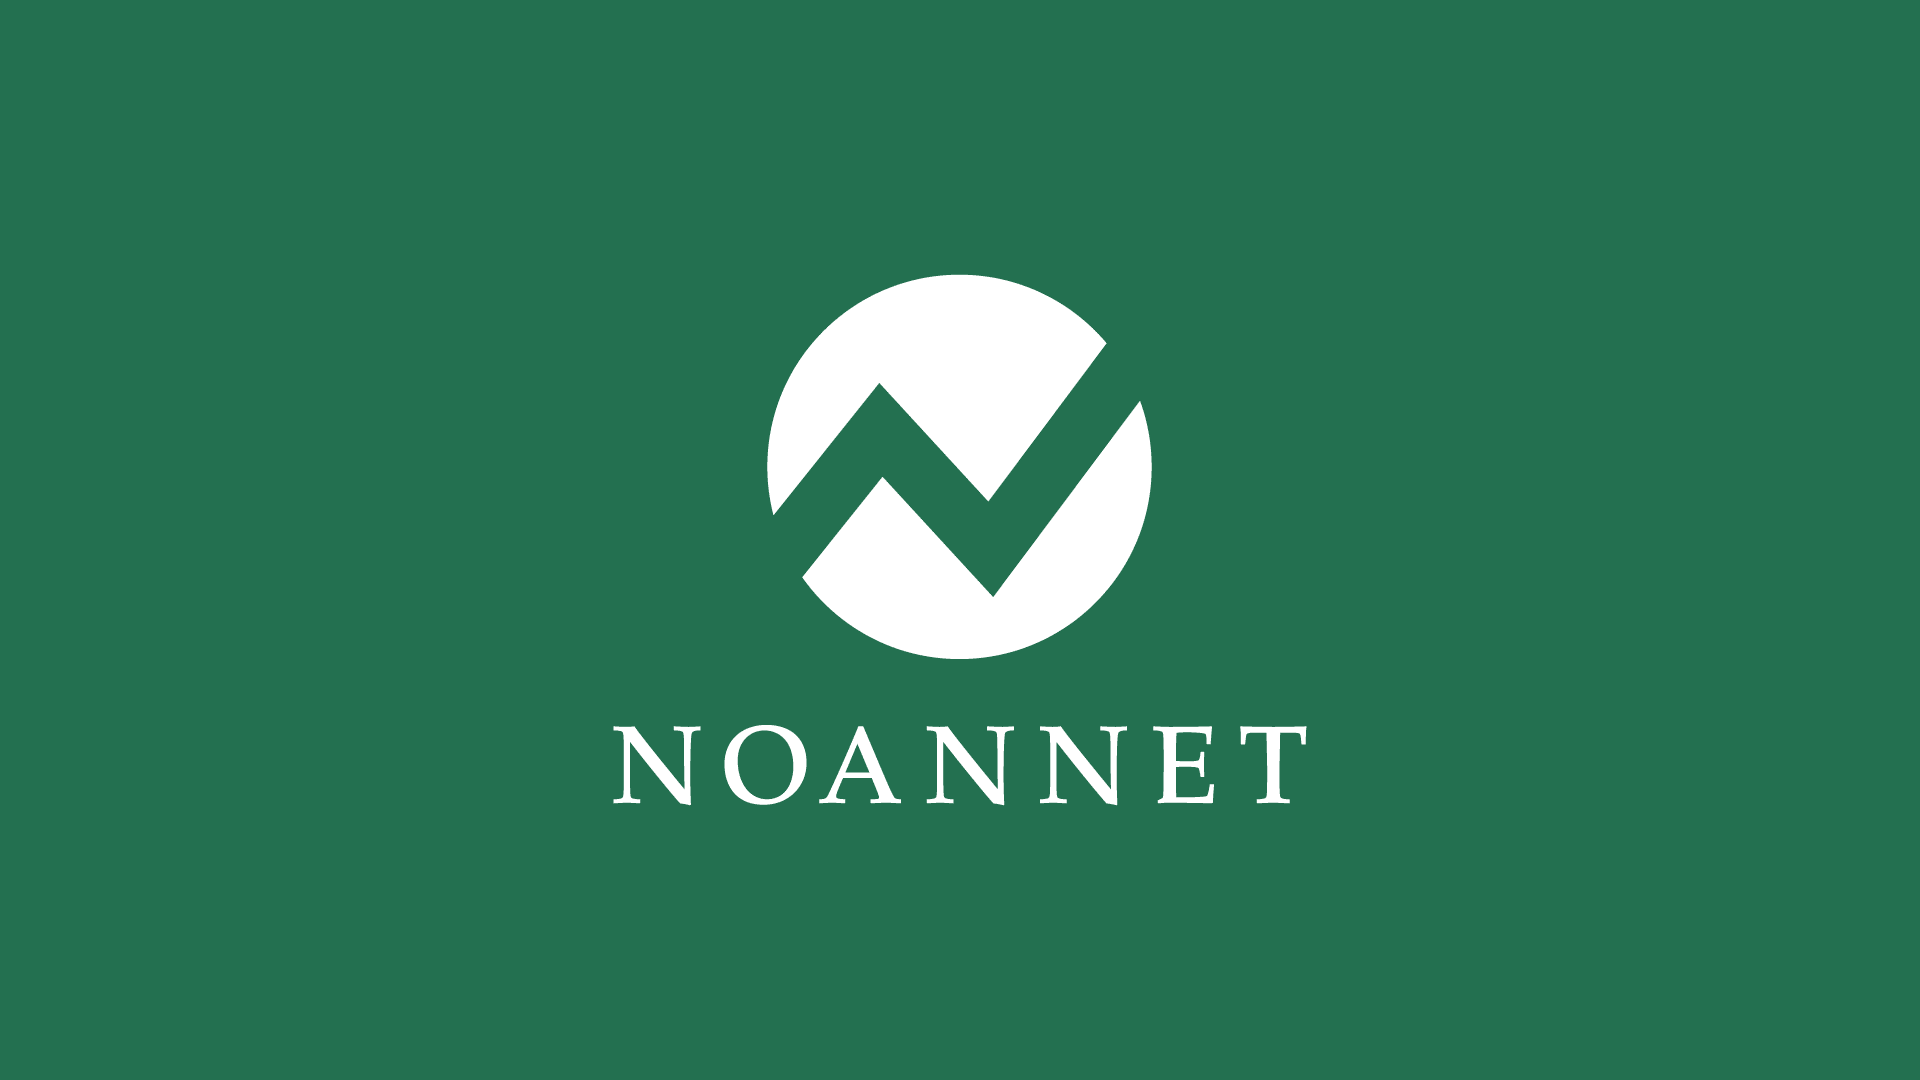 Noannet logo on green